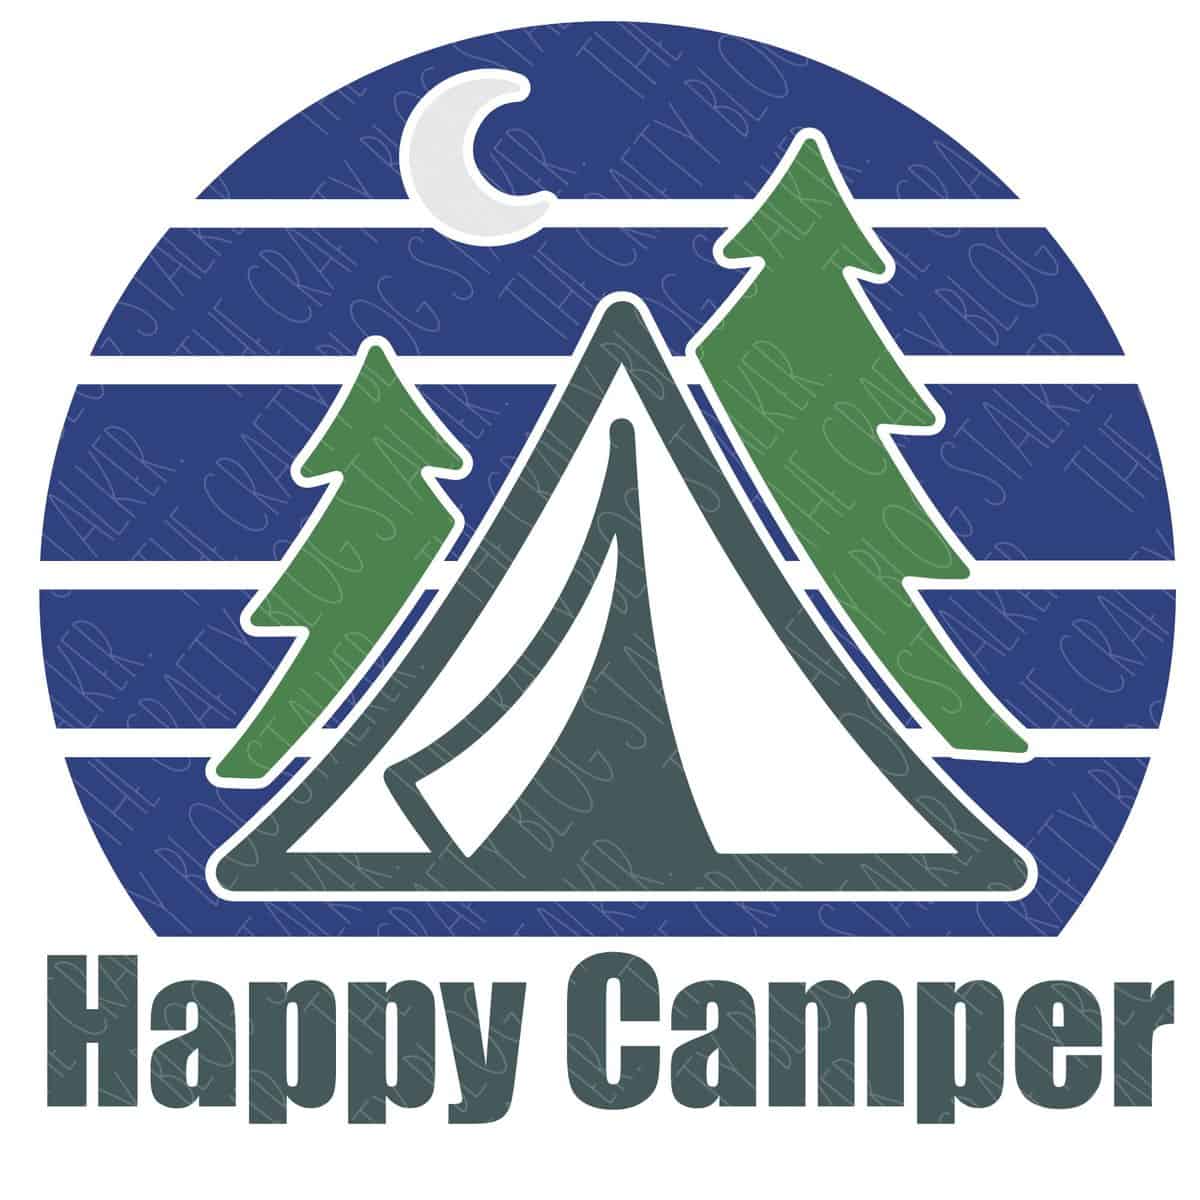 Happy Camper SVG - The Crafty Blog Stalker